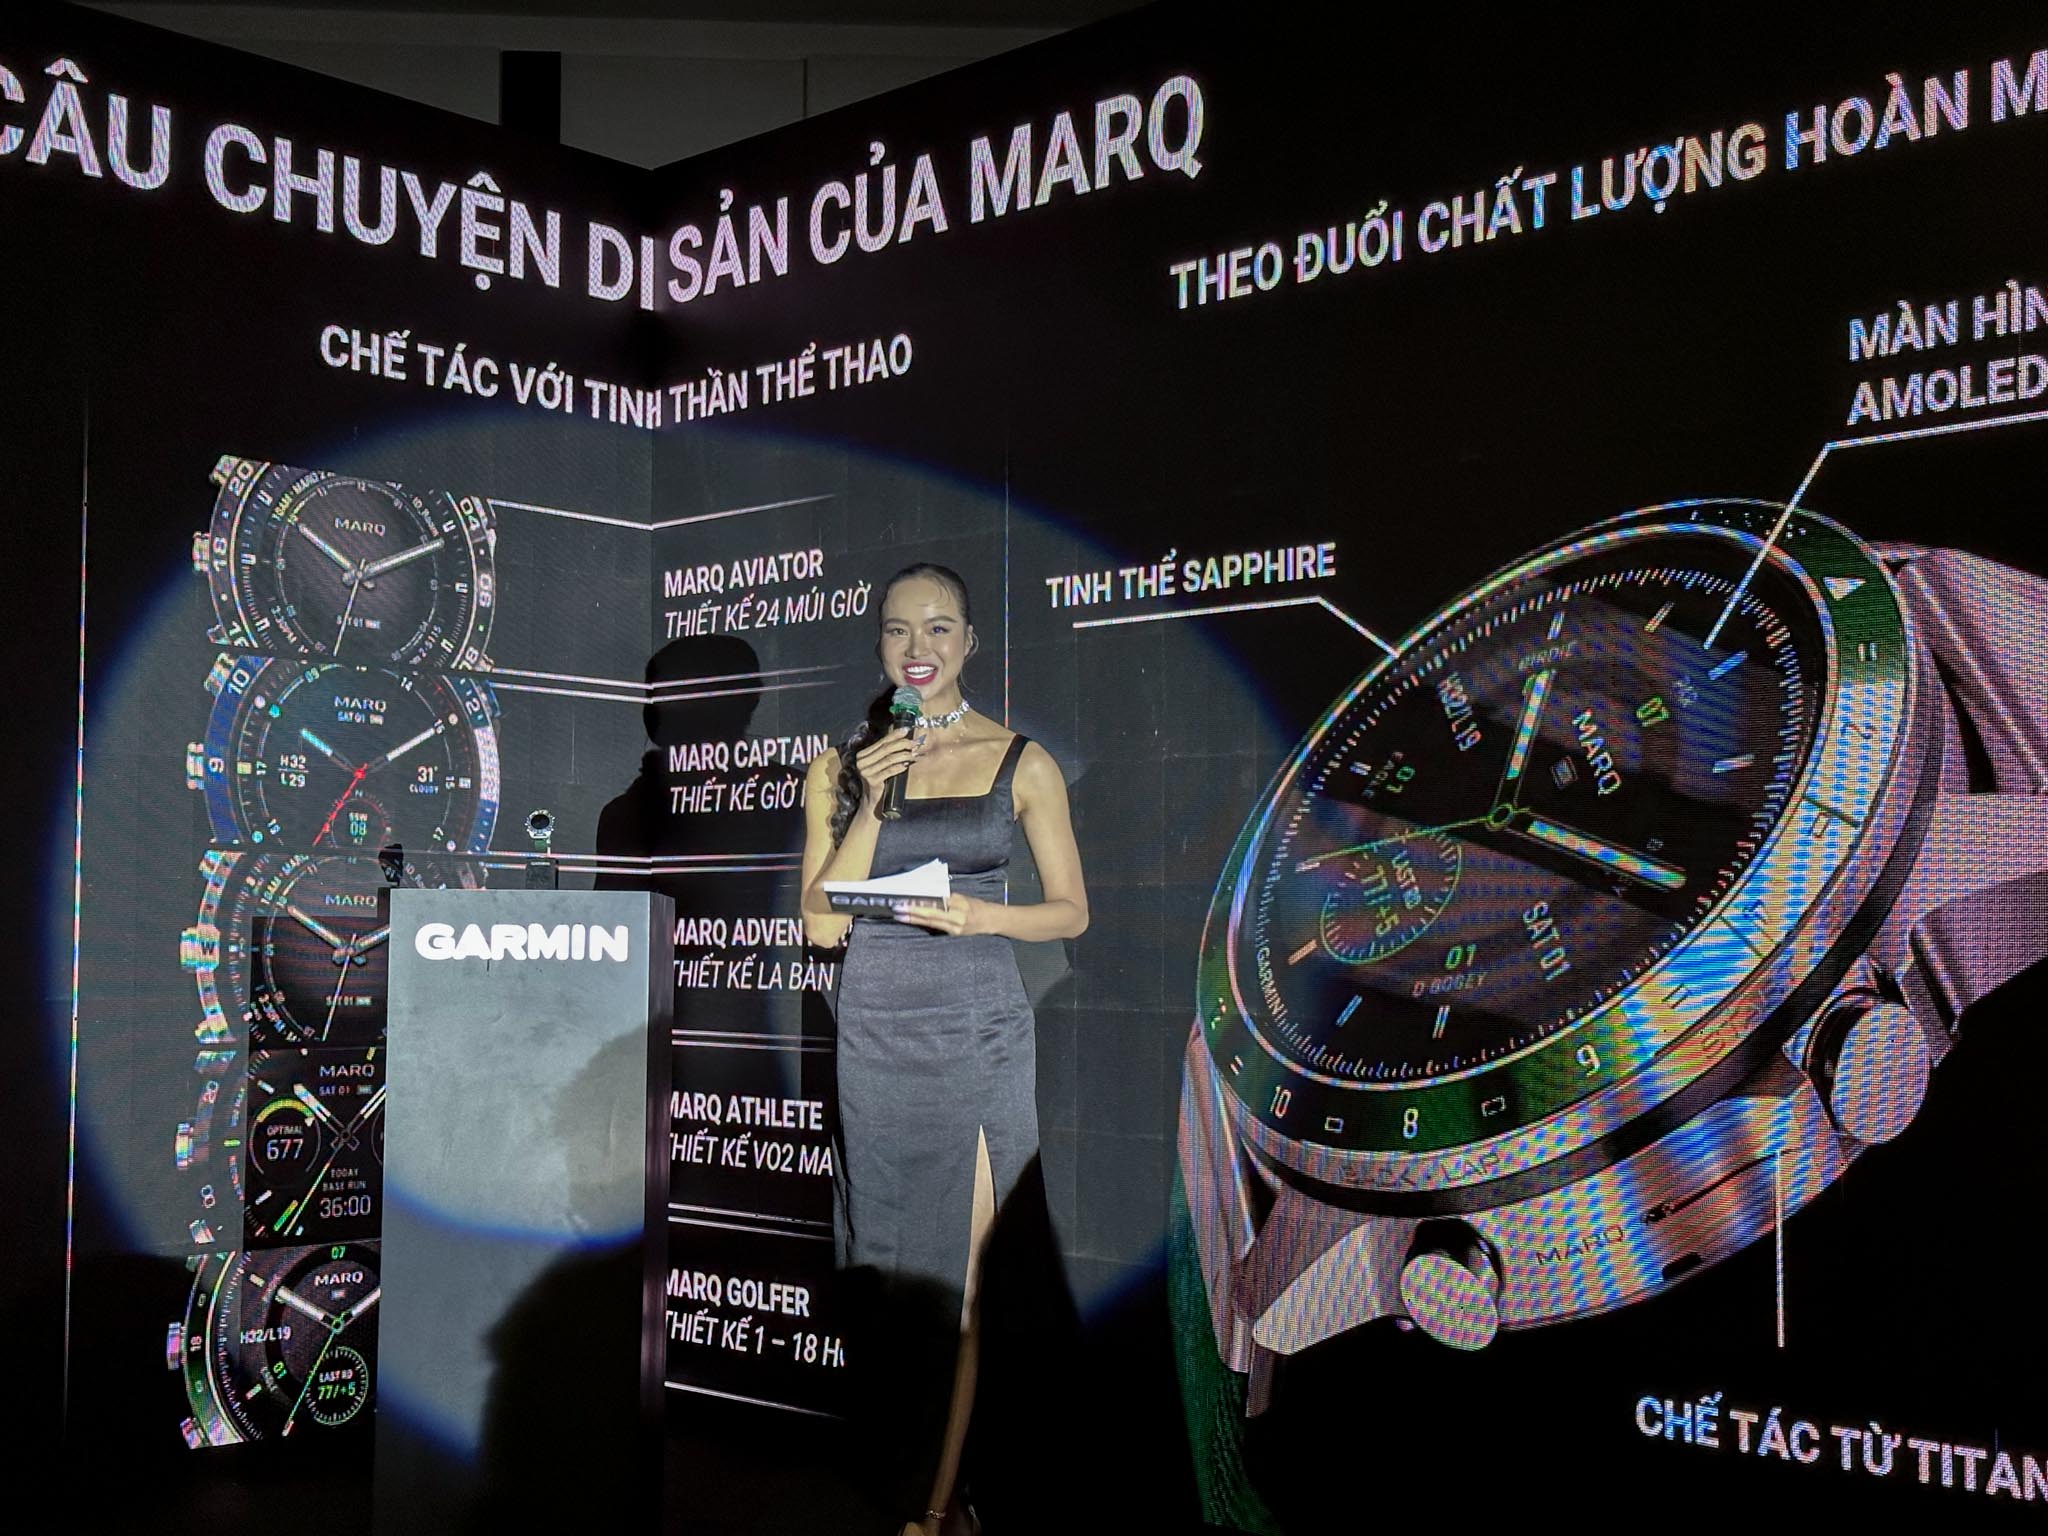 Garmin ra mắt bộ sưu tập MARQ thế hệ thứ hai, thiết lập đẳng cấp mới với năm phiên bản đồng hồ cao cấp